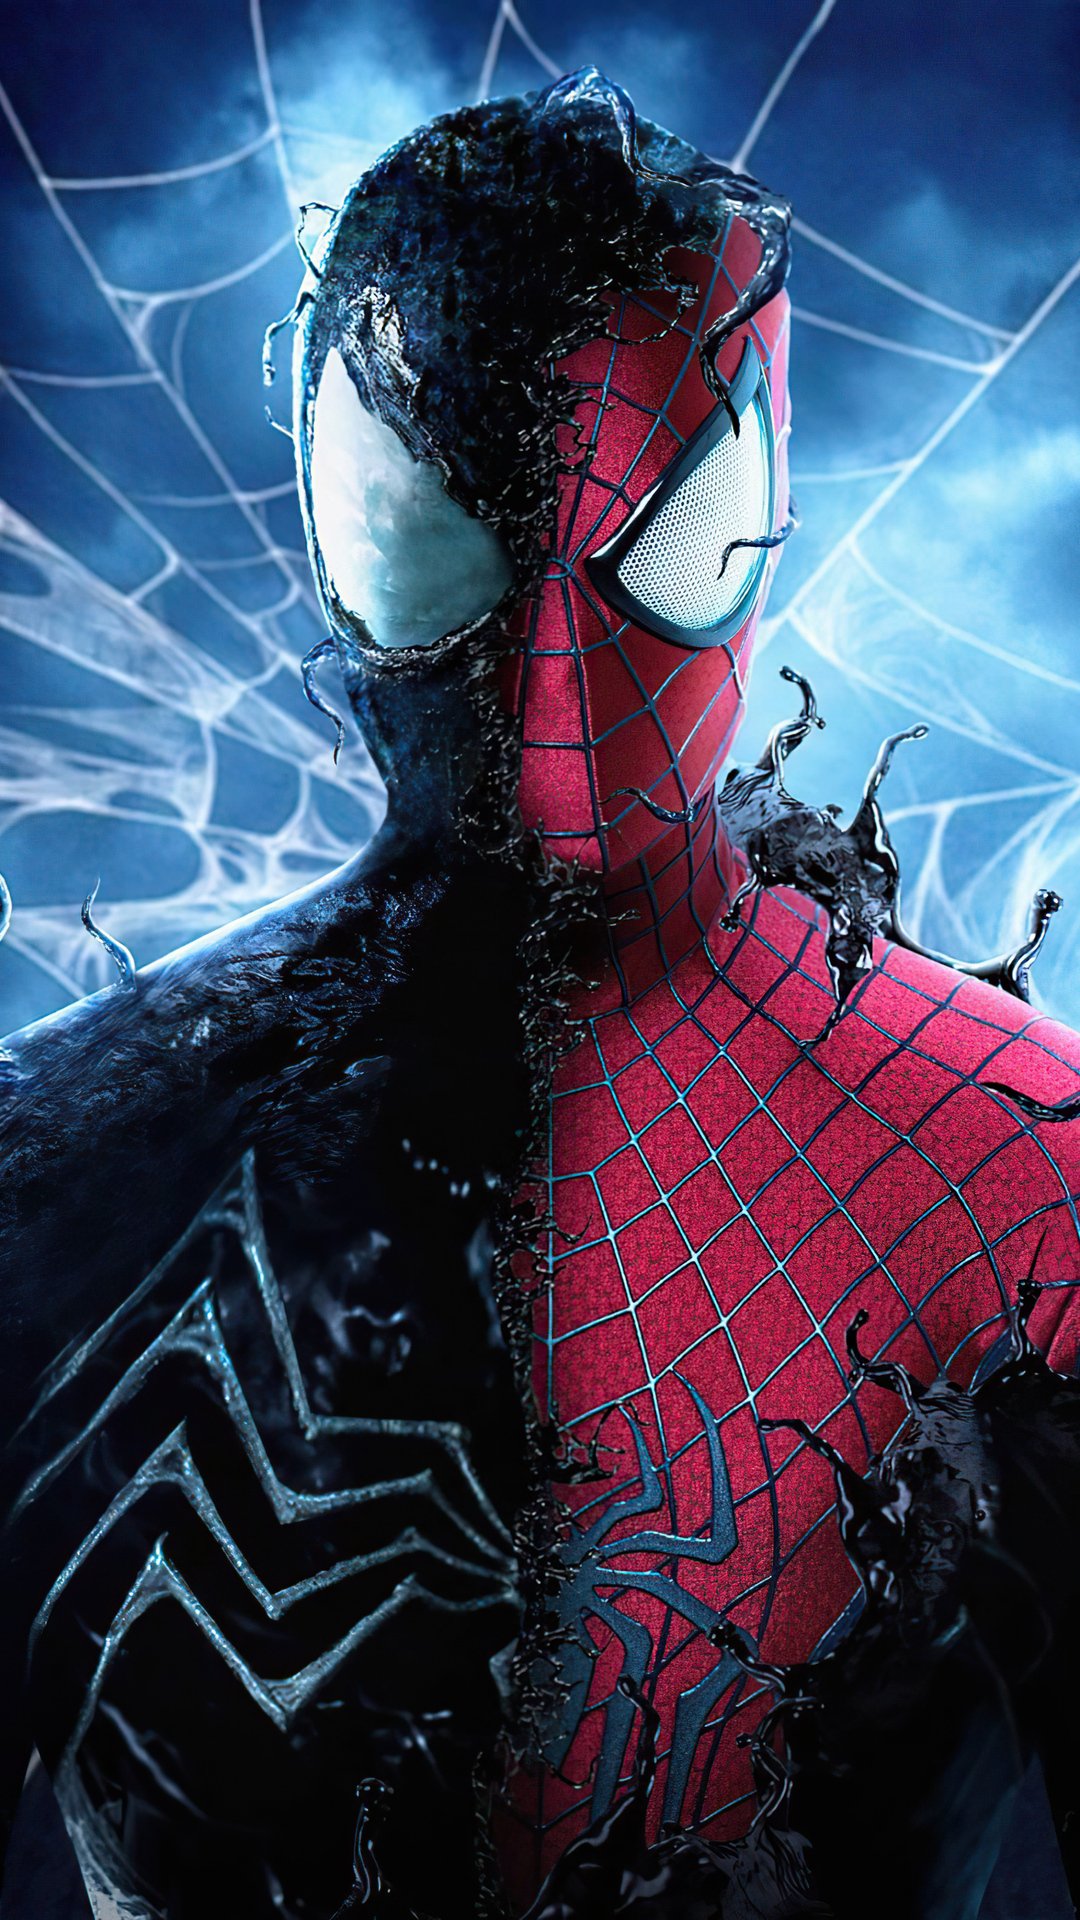 SpiderMan Toxin Symbiote Costume 4K Wallpaper 62163